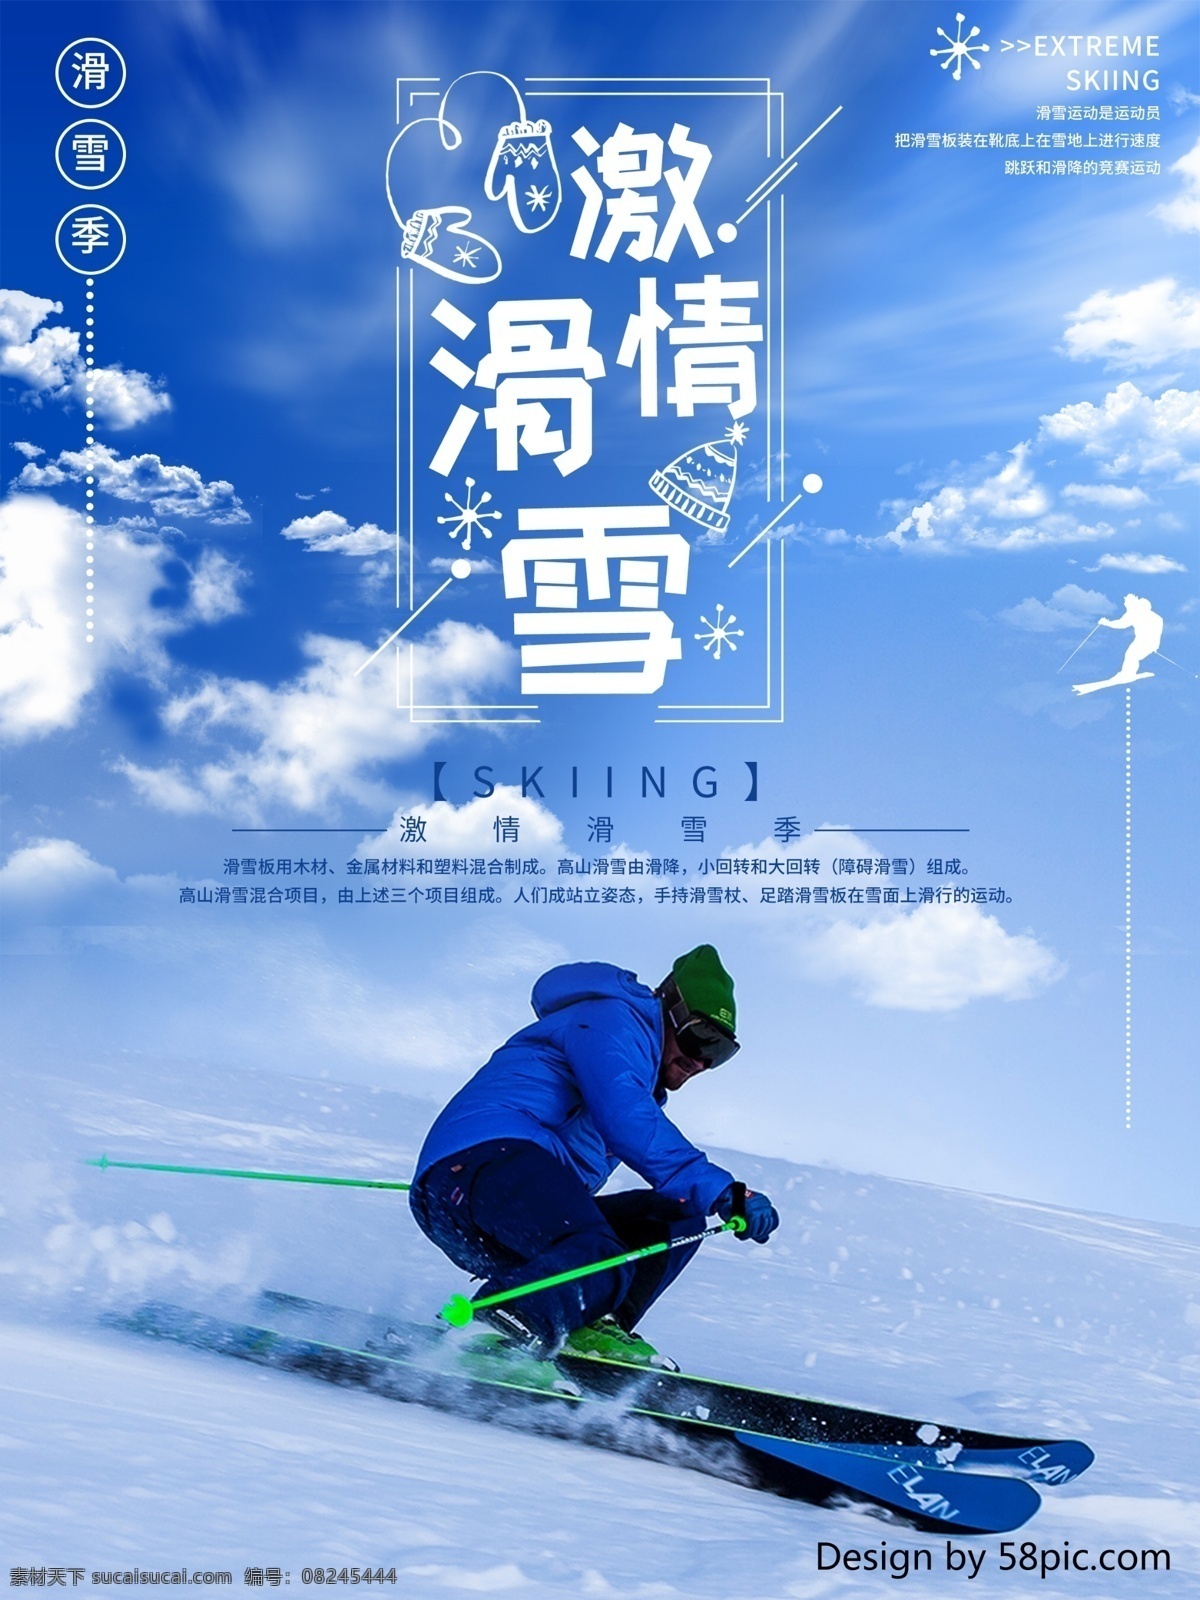 大气 简约 激情 滑雪 海报 冬季 滑雪季 滑雪海报